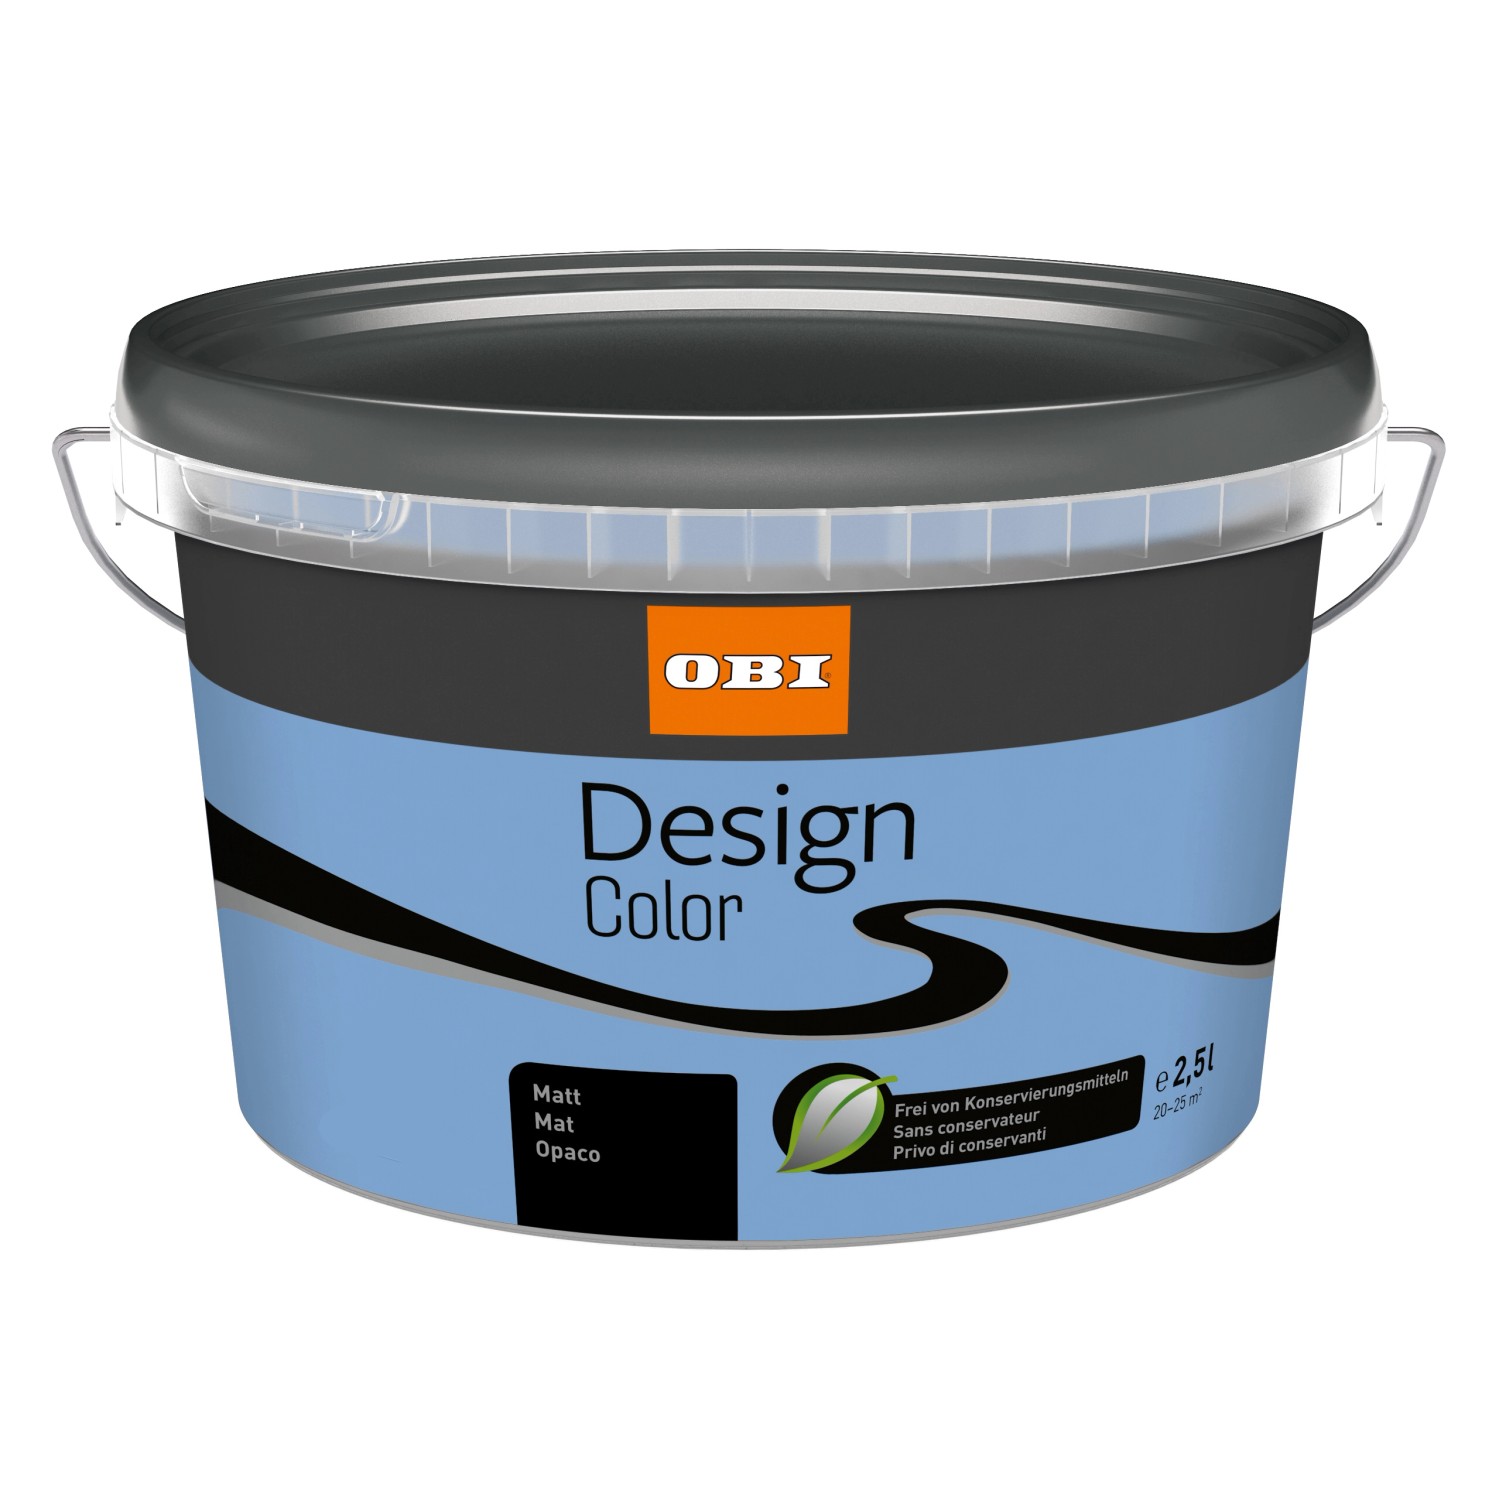 OBI Design Color matt Ocean 2,5 l von OBI